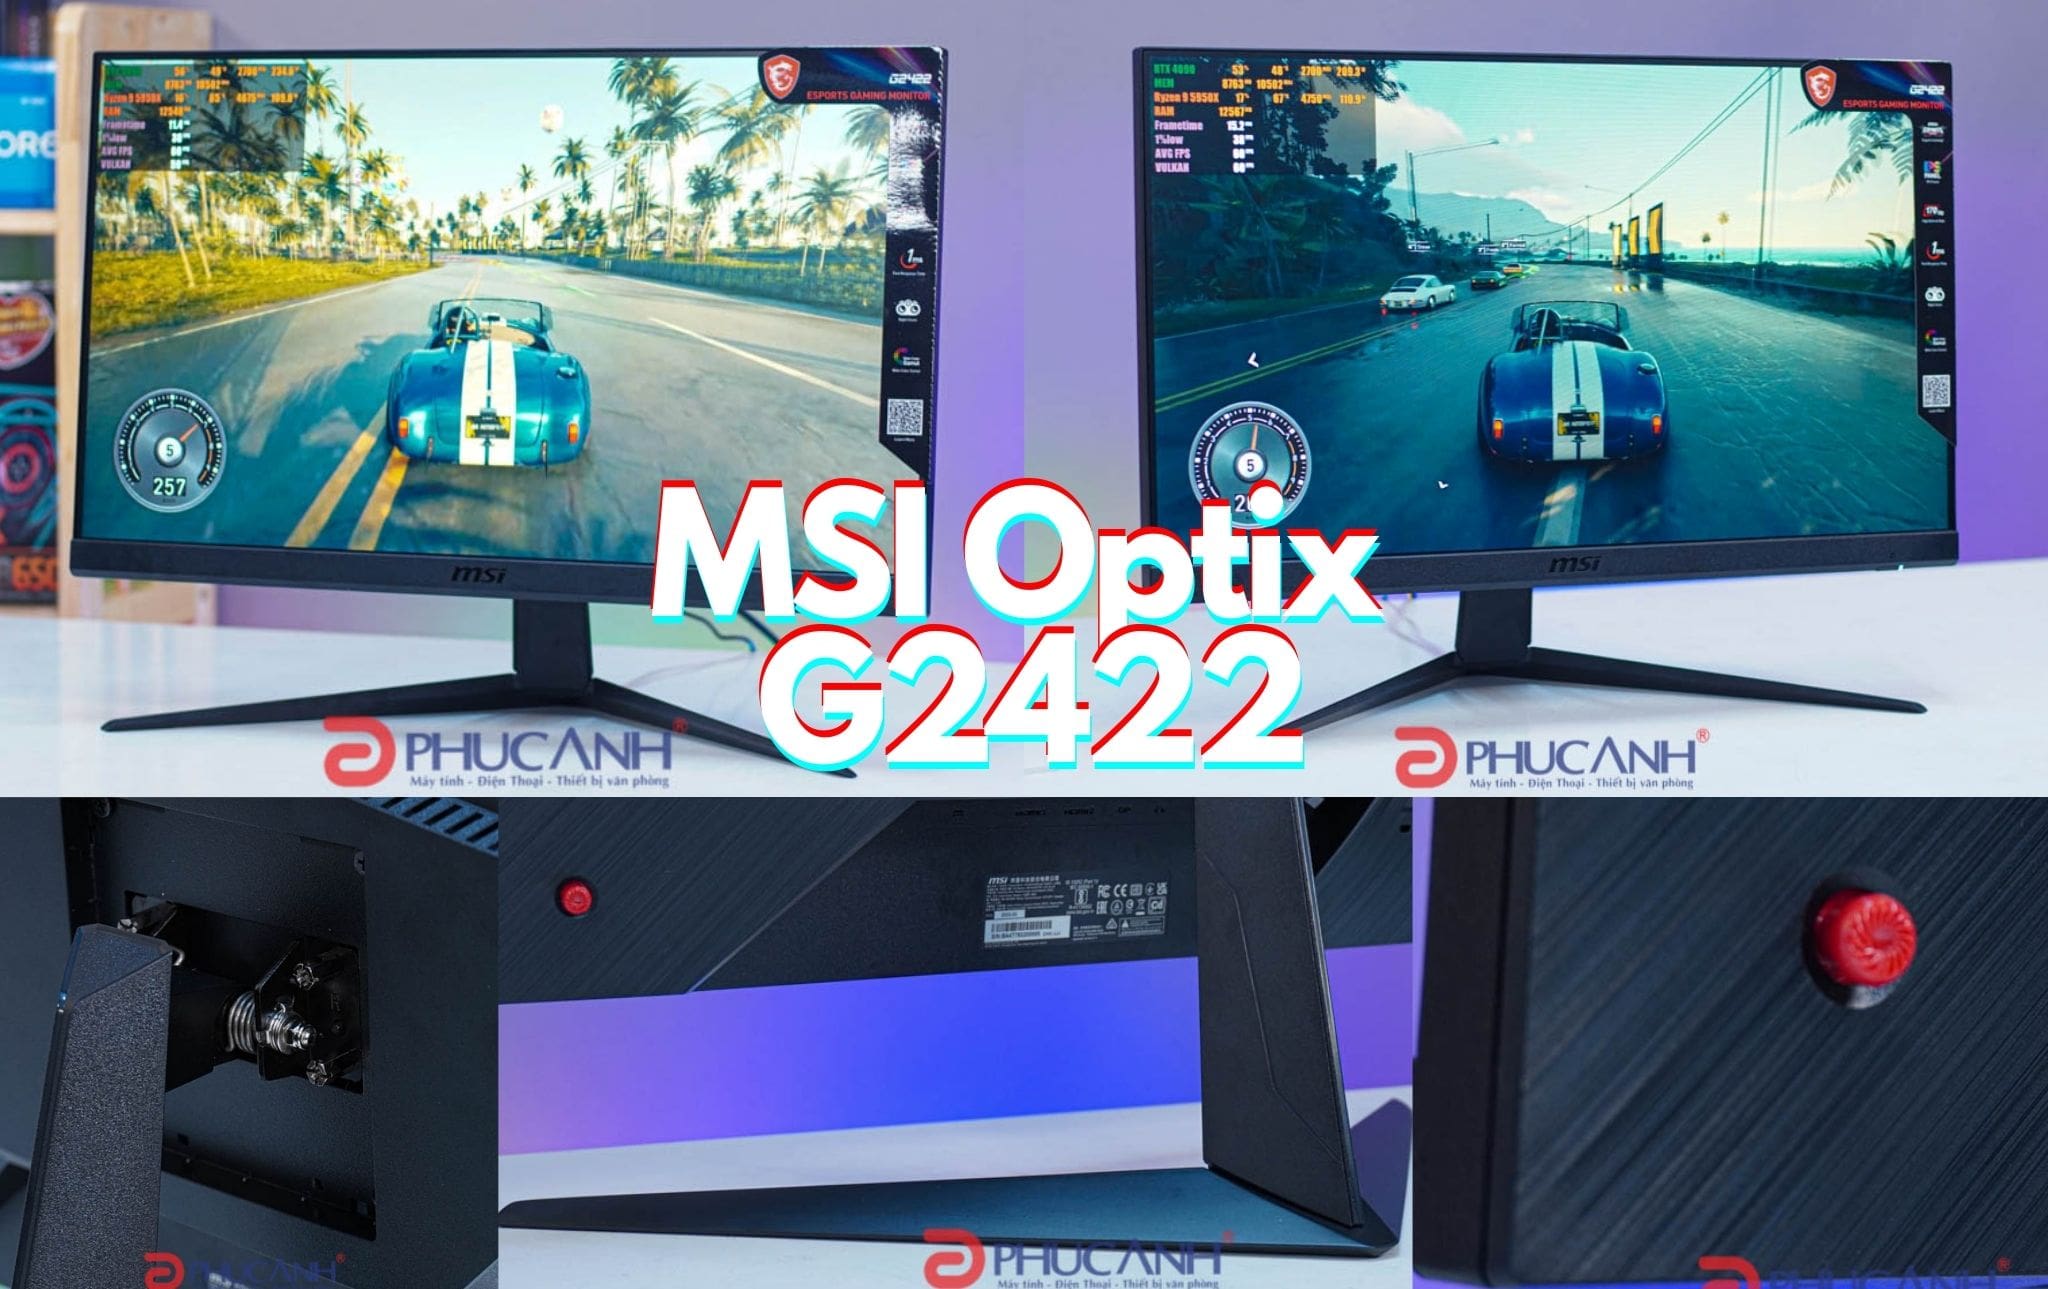 Màn hình gaming MSI Optix G2422